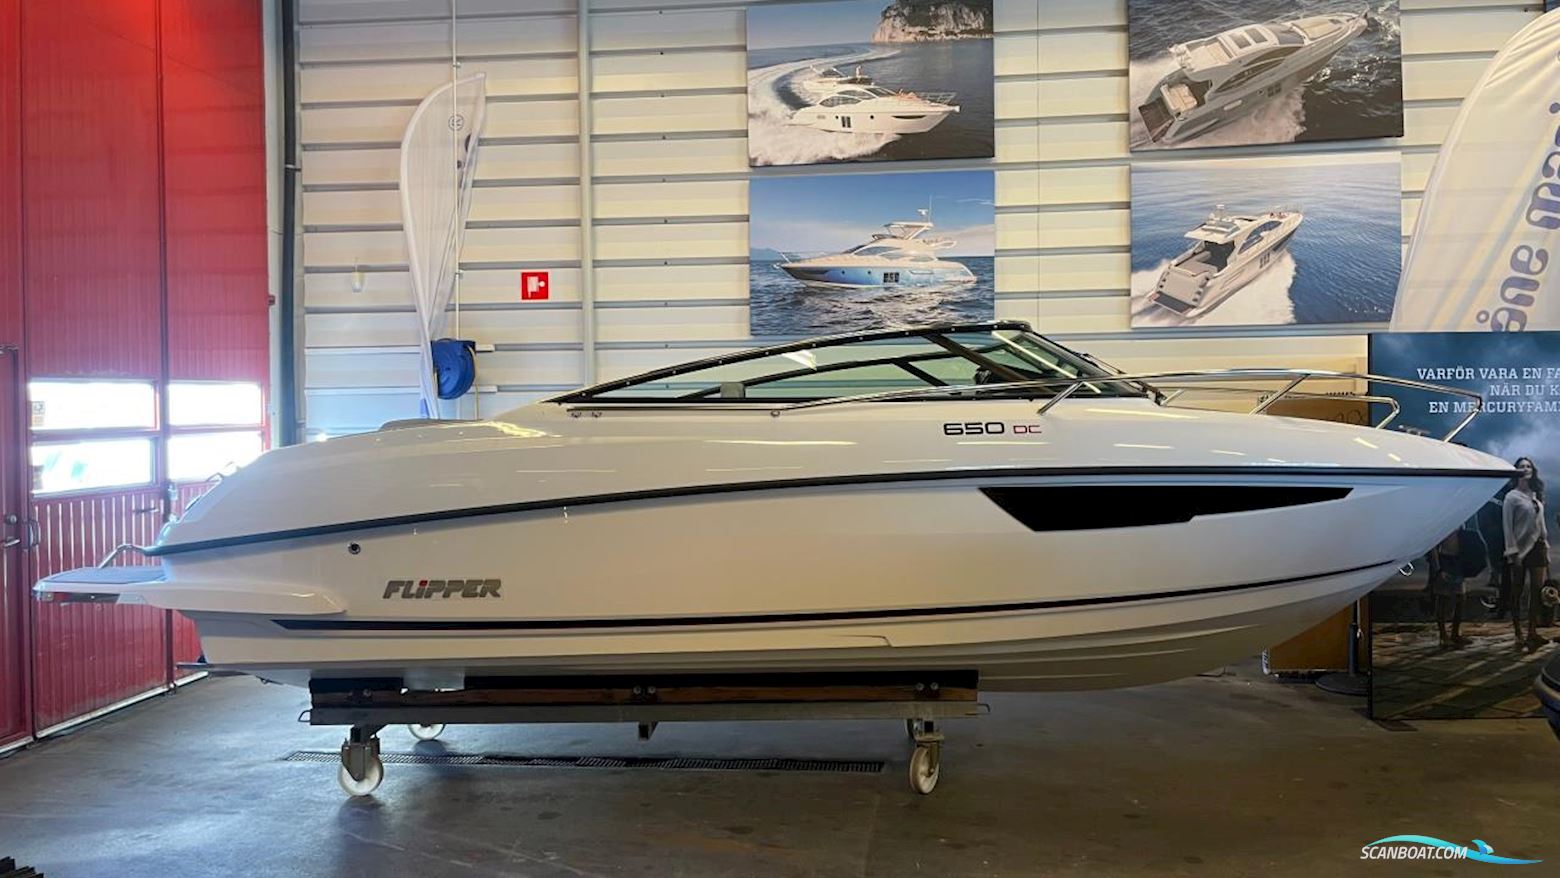 Flipper 650 DC Motorboot 2023, mit Mercury motor, Sweden